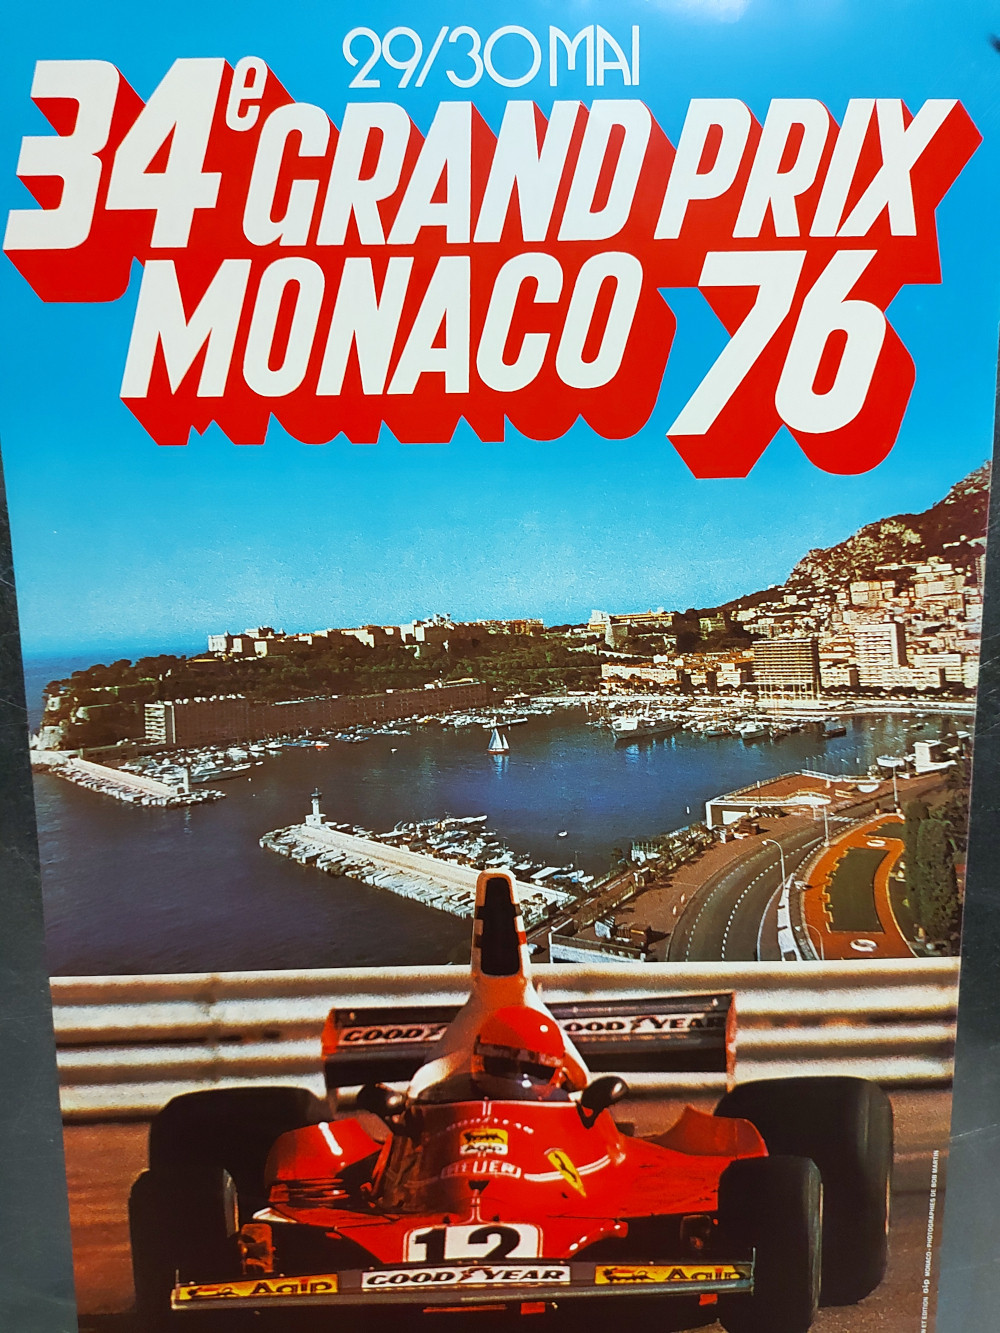 1976 * Affiche Original 34e Grand Prix Monaco F1 - Niki Lauda - Bob  Martin (A) - Mynumi